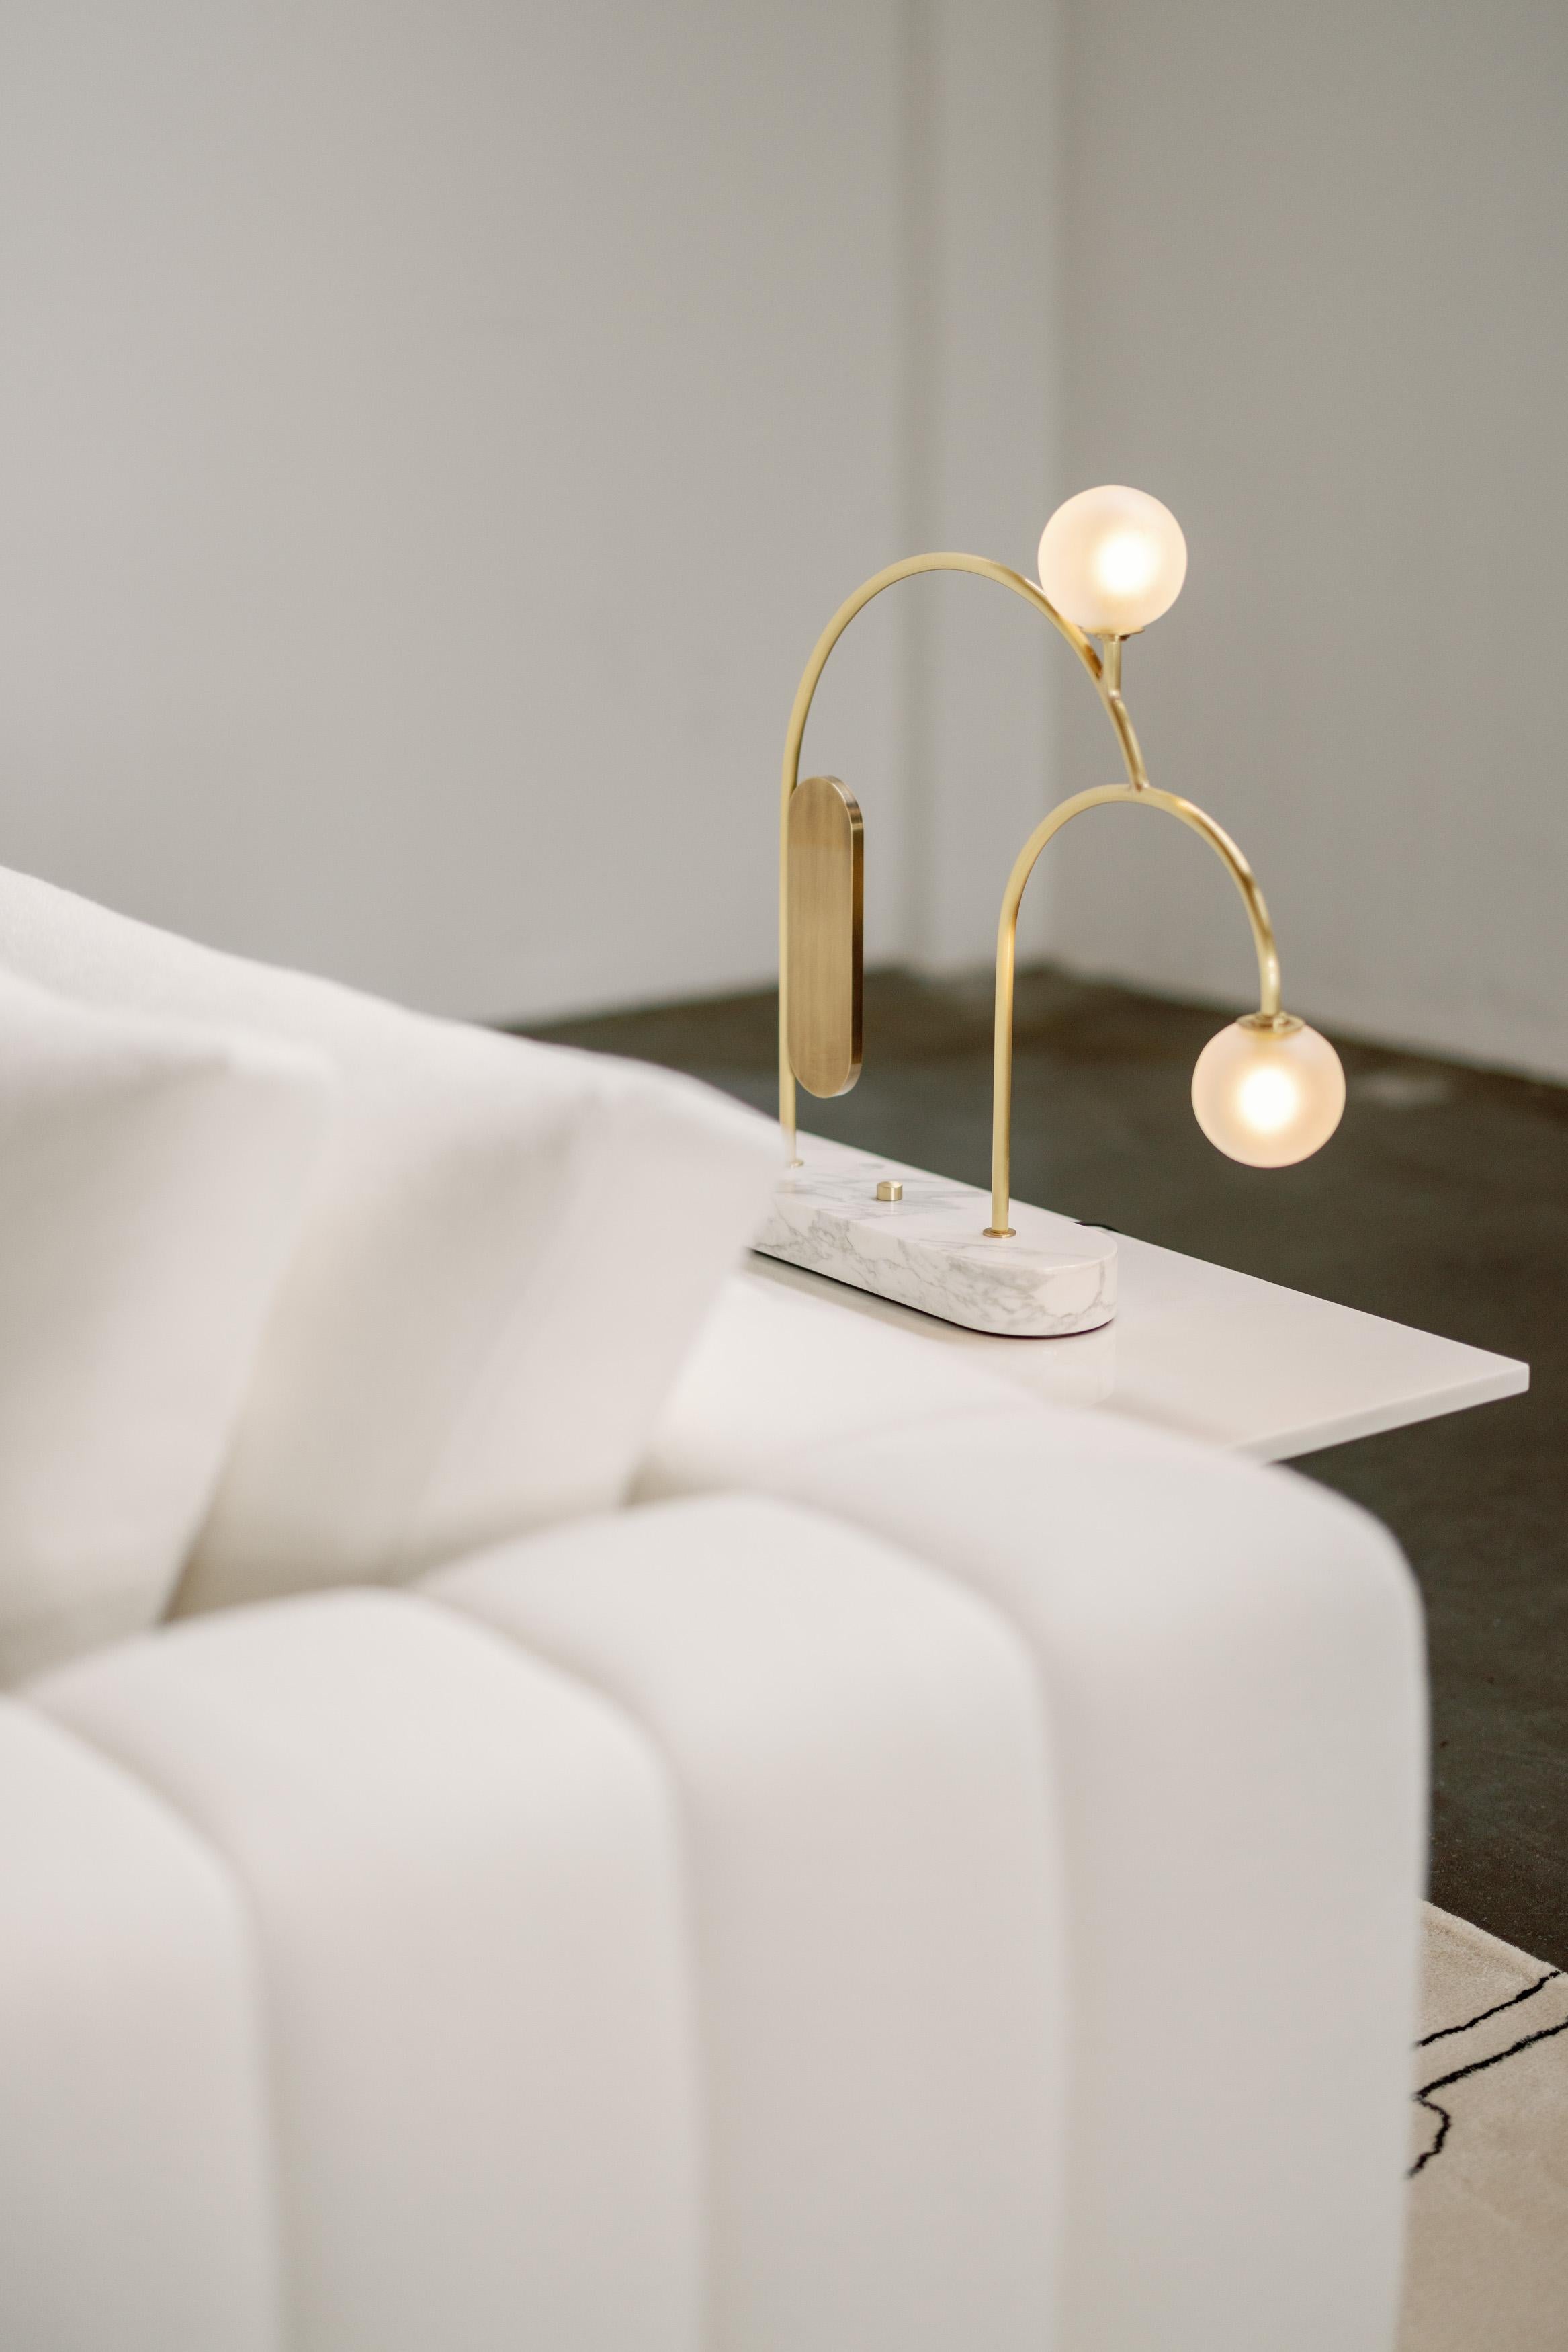 Two Cordless Table Lamp, Contemporary Collection, Handcrafted in Portugal - Europe by Greenapple.

La lampe à poser sans fil Two redéfinit les concepts de fonctionnalité et de style dans la décoration intérieure contemporaine avec une élégance